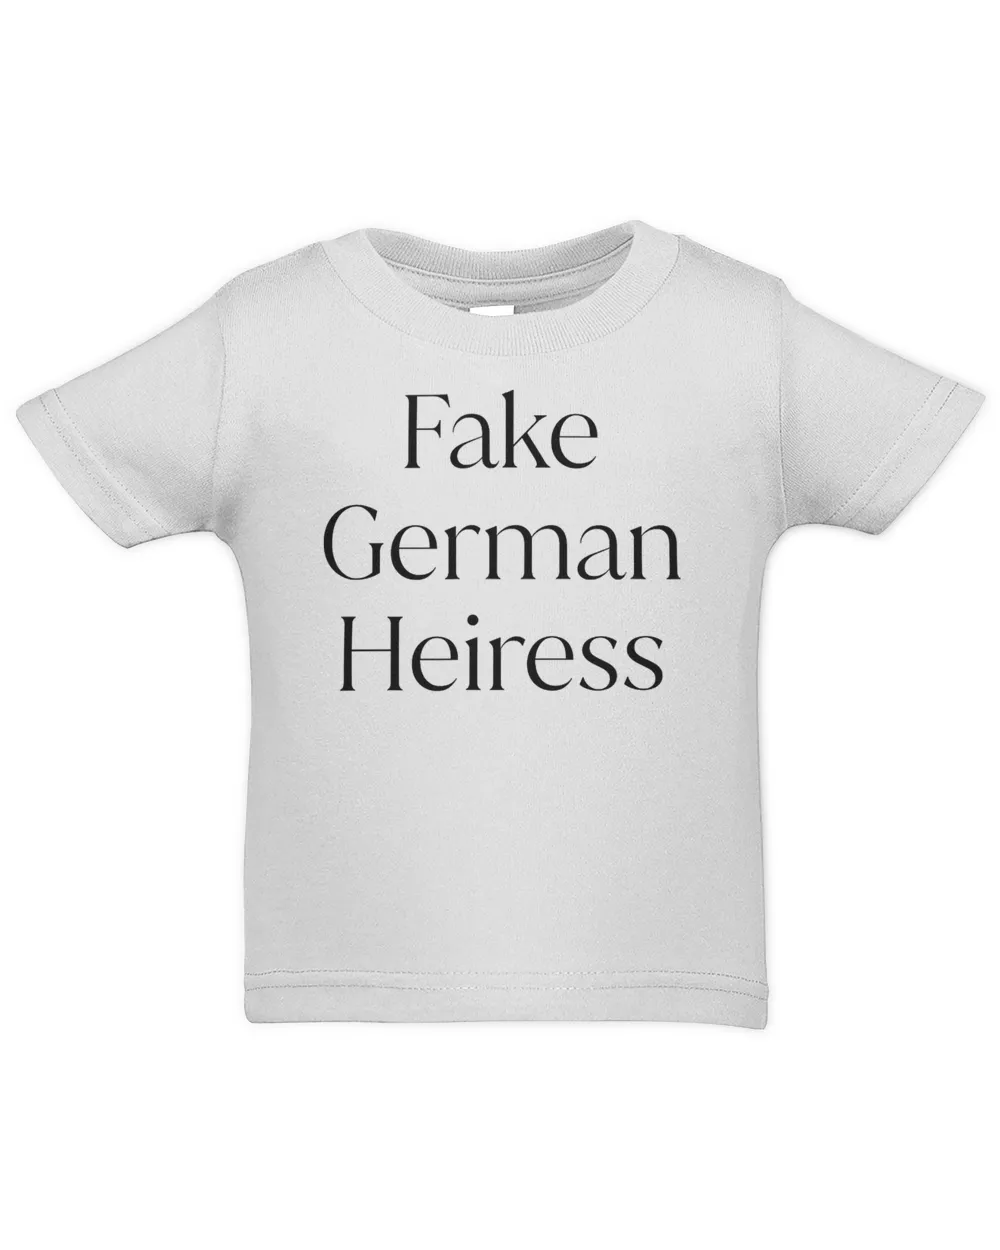 Fake German Heiress T-Shirt